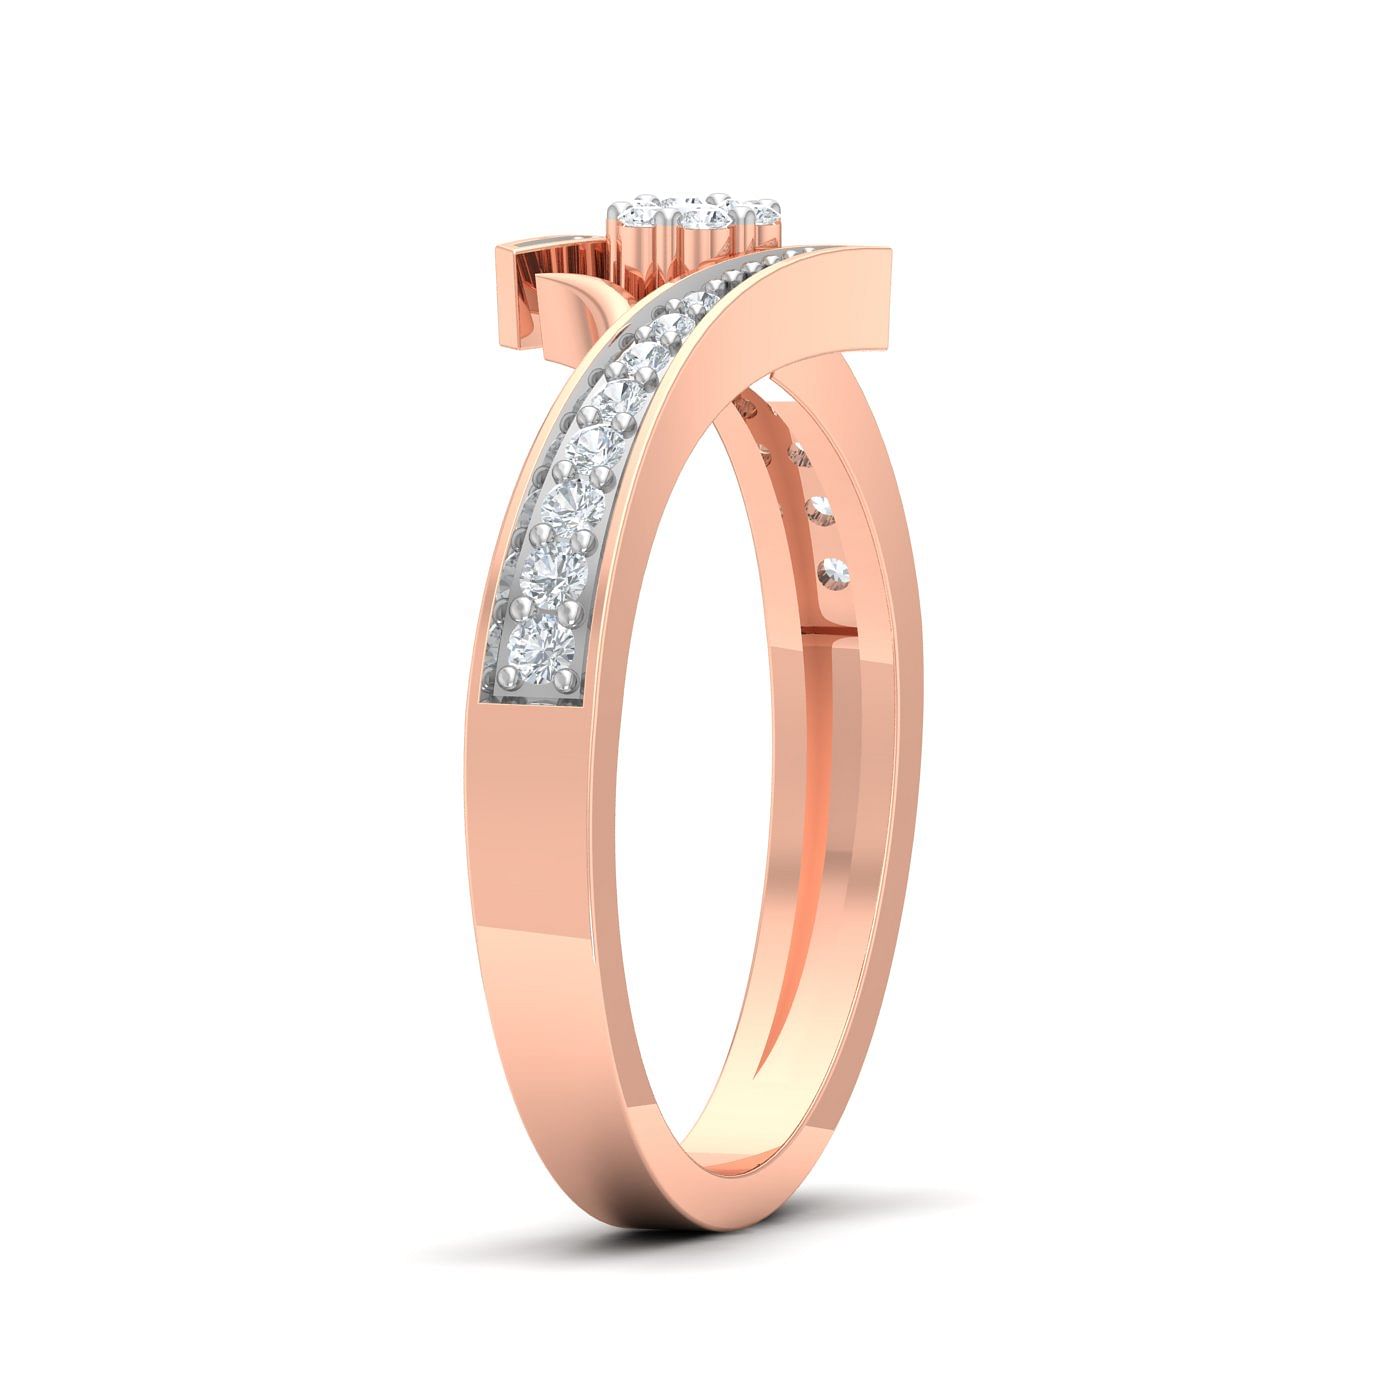 Rose Gold Cluster Diamond Ring For Women